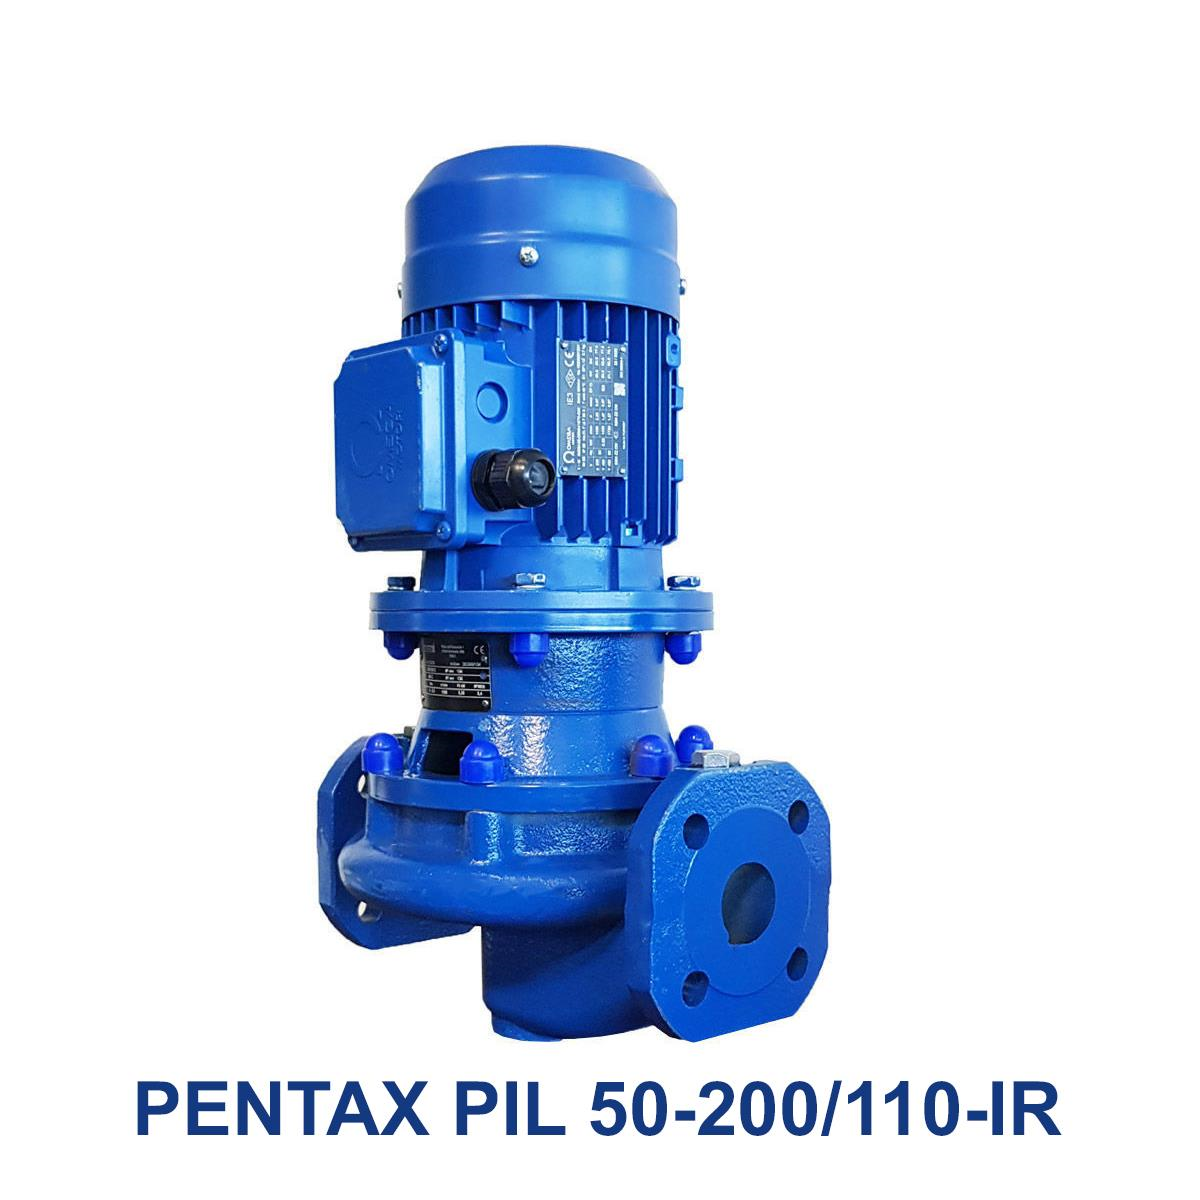 PENTAX-PIL-50-200-110-IR